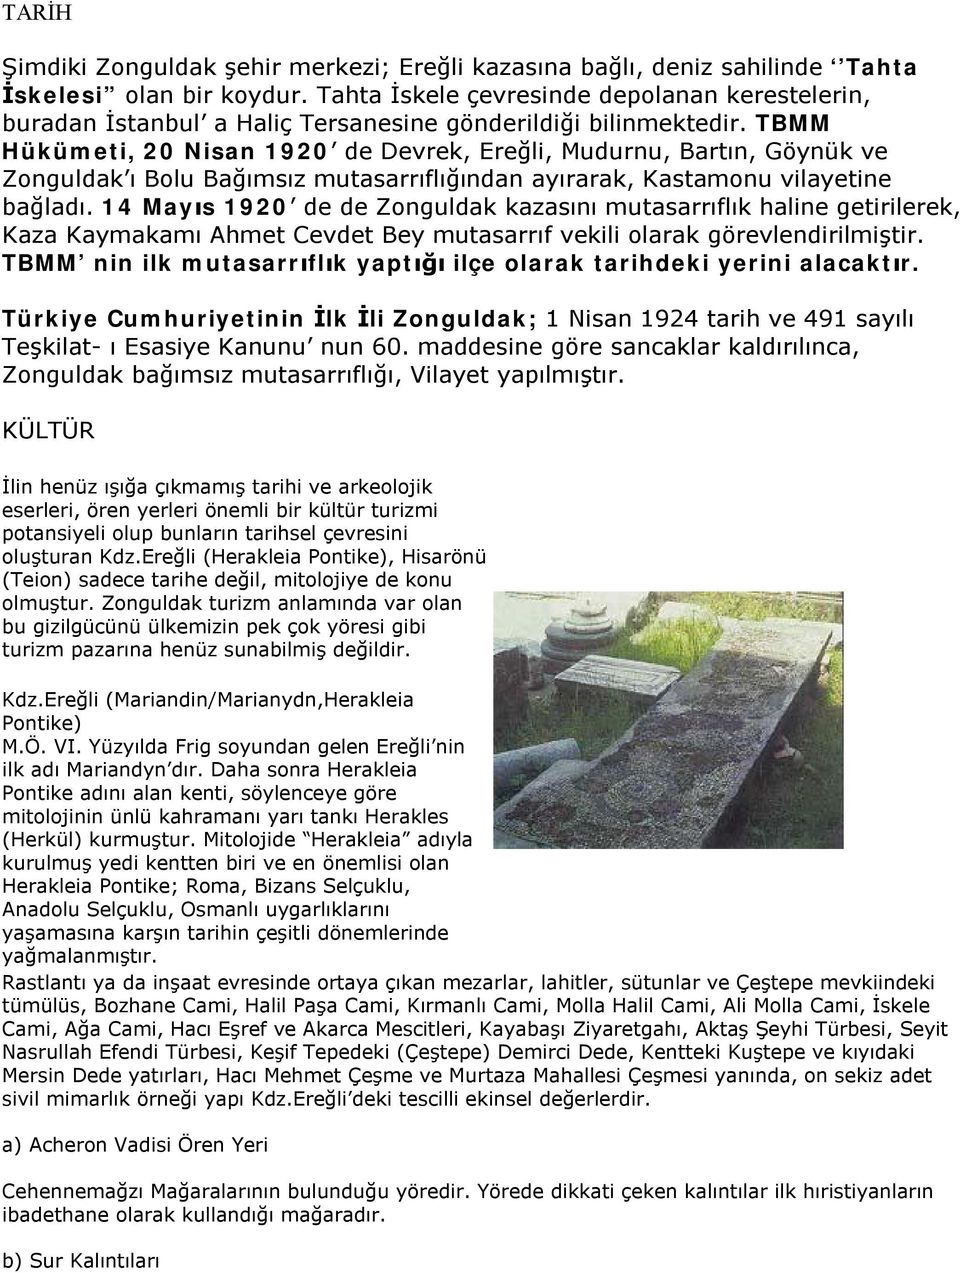 TBMM Hükümeti, 20 Nisan 1920 de Devrek, Ereğli, Mudurnu, Bartın, Göynük ve Zonguldak ı Bolu Bağımsız mutasarrıflığından ayırarak, Kastamonu vilayetine bağladı.